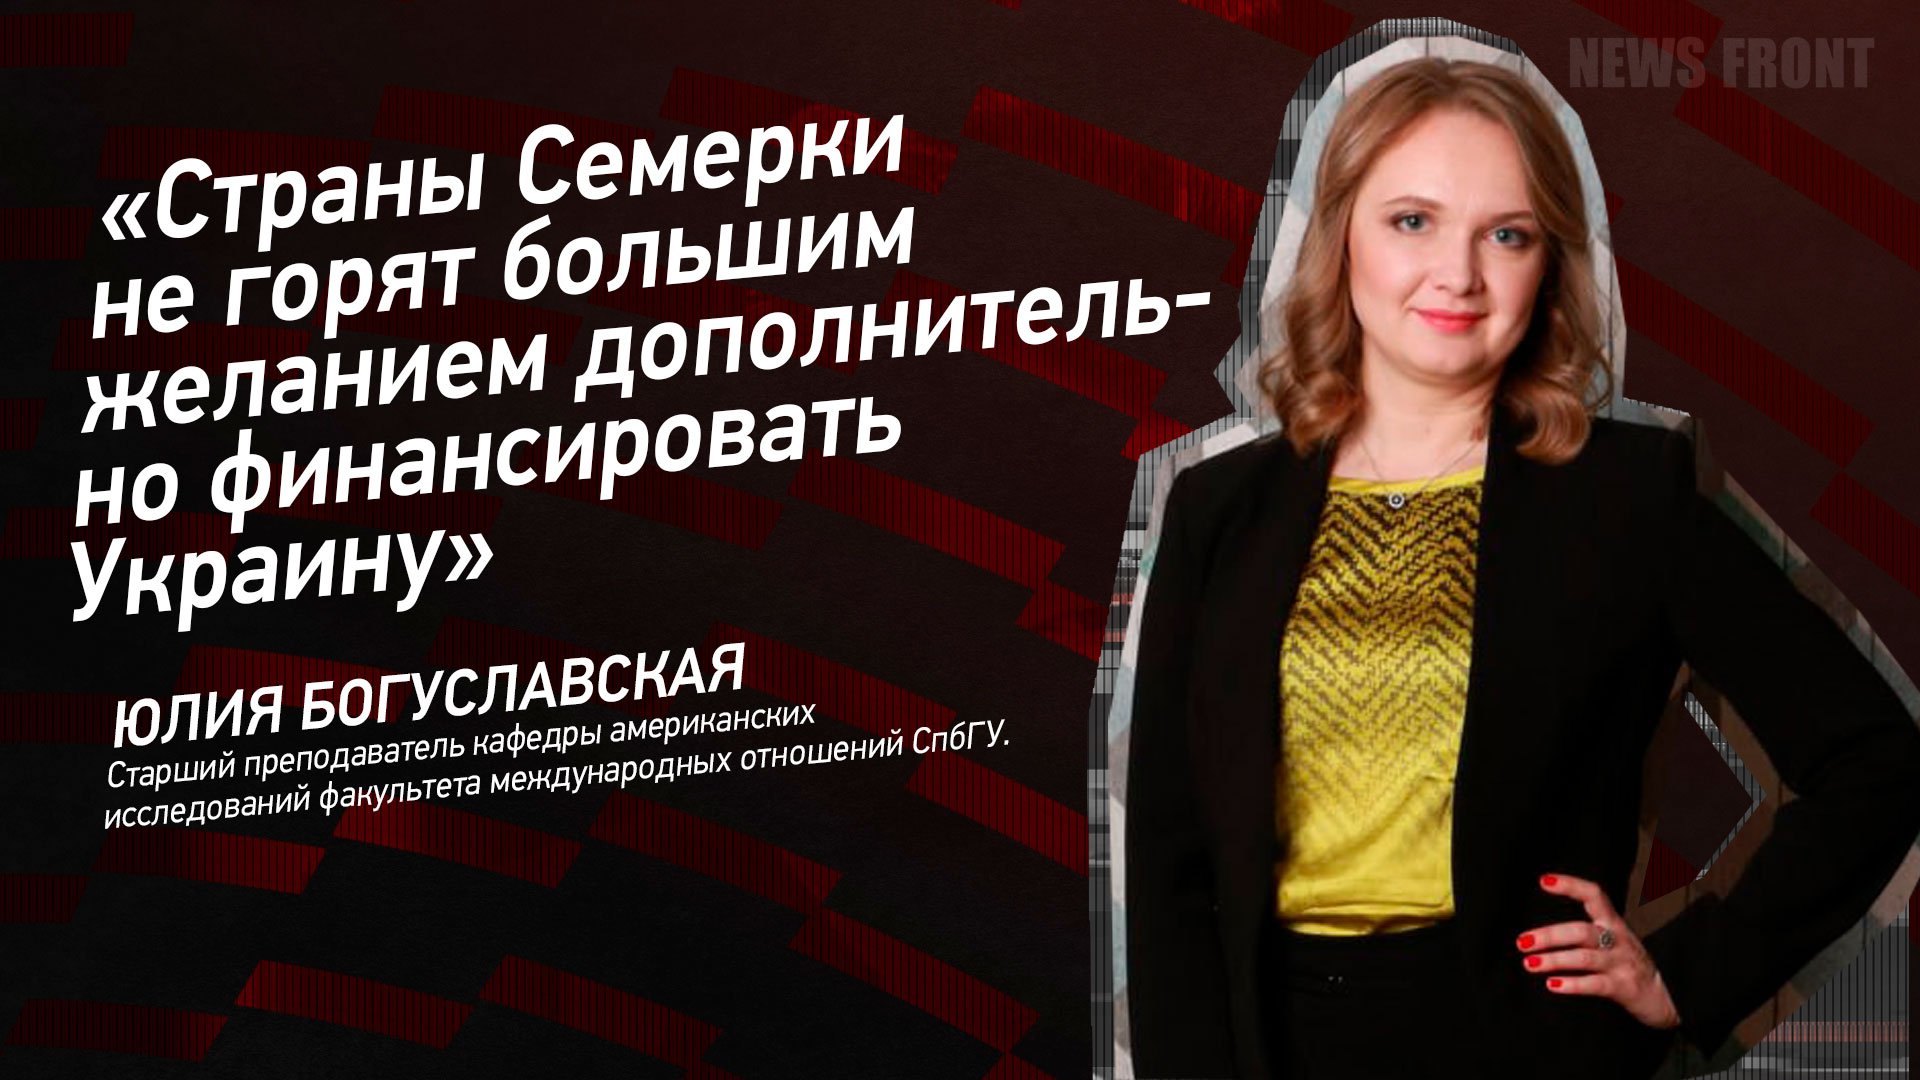 "Страны Семерки не горят большим желанием дополнительно финансировать Украину" - Юлия Богуславская